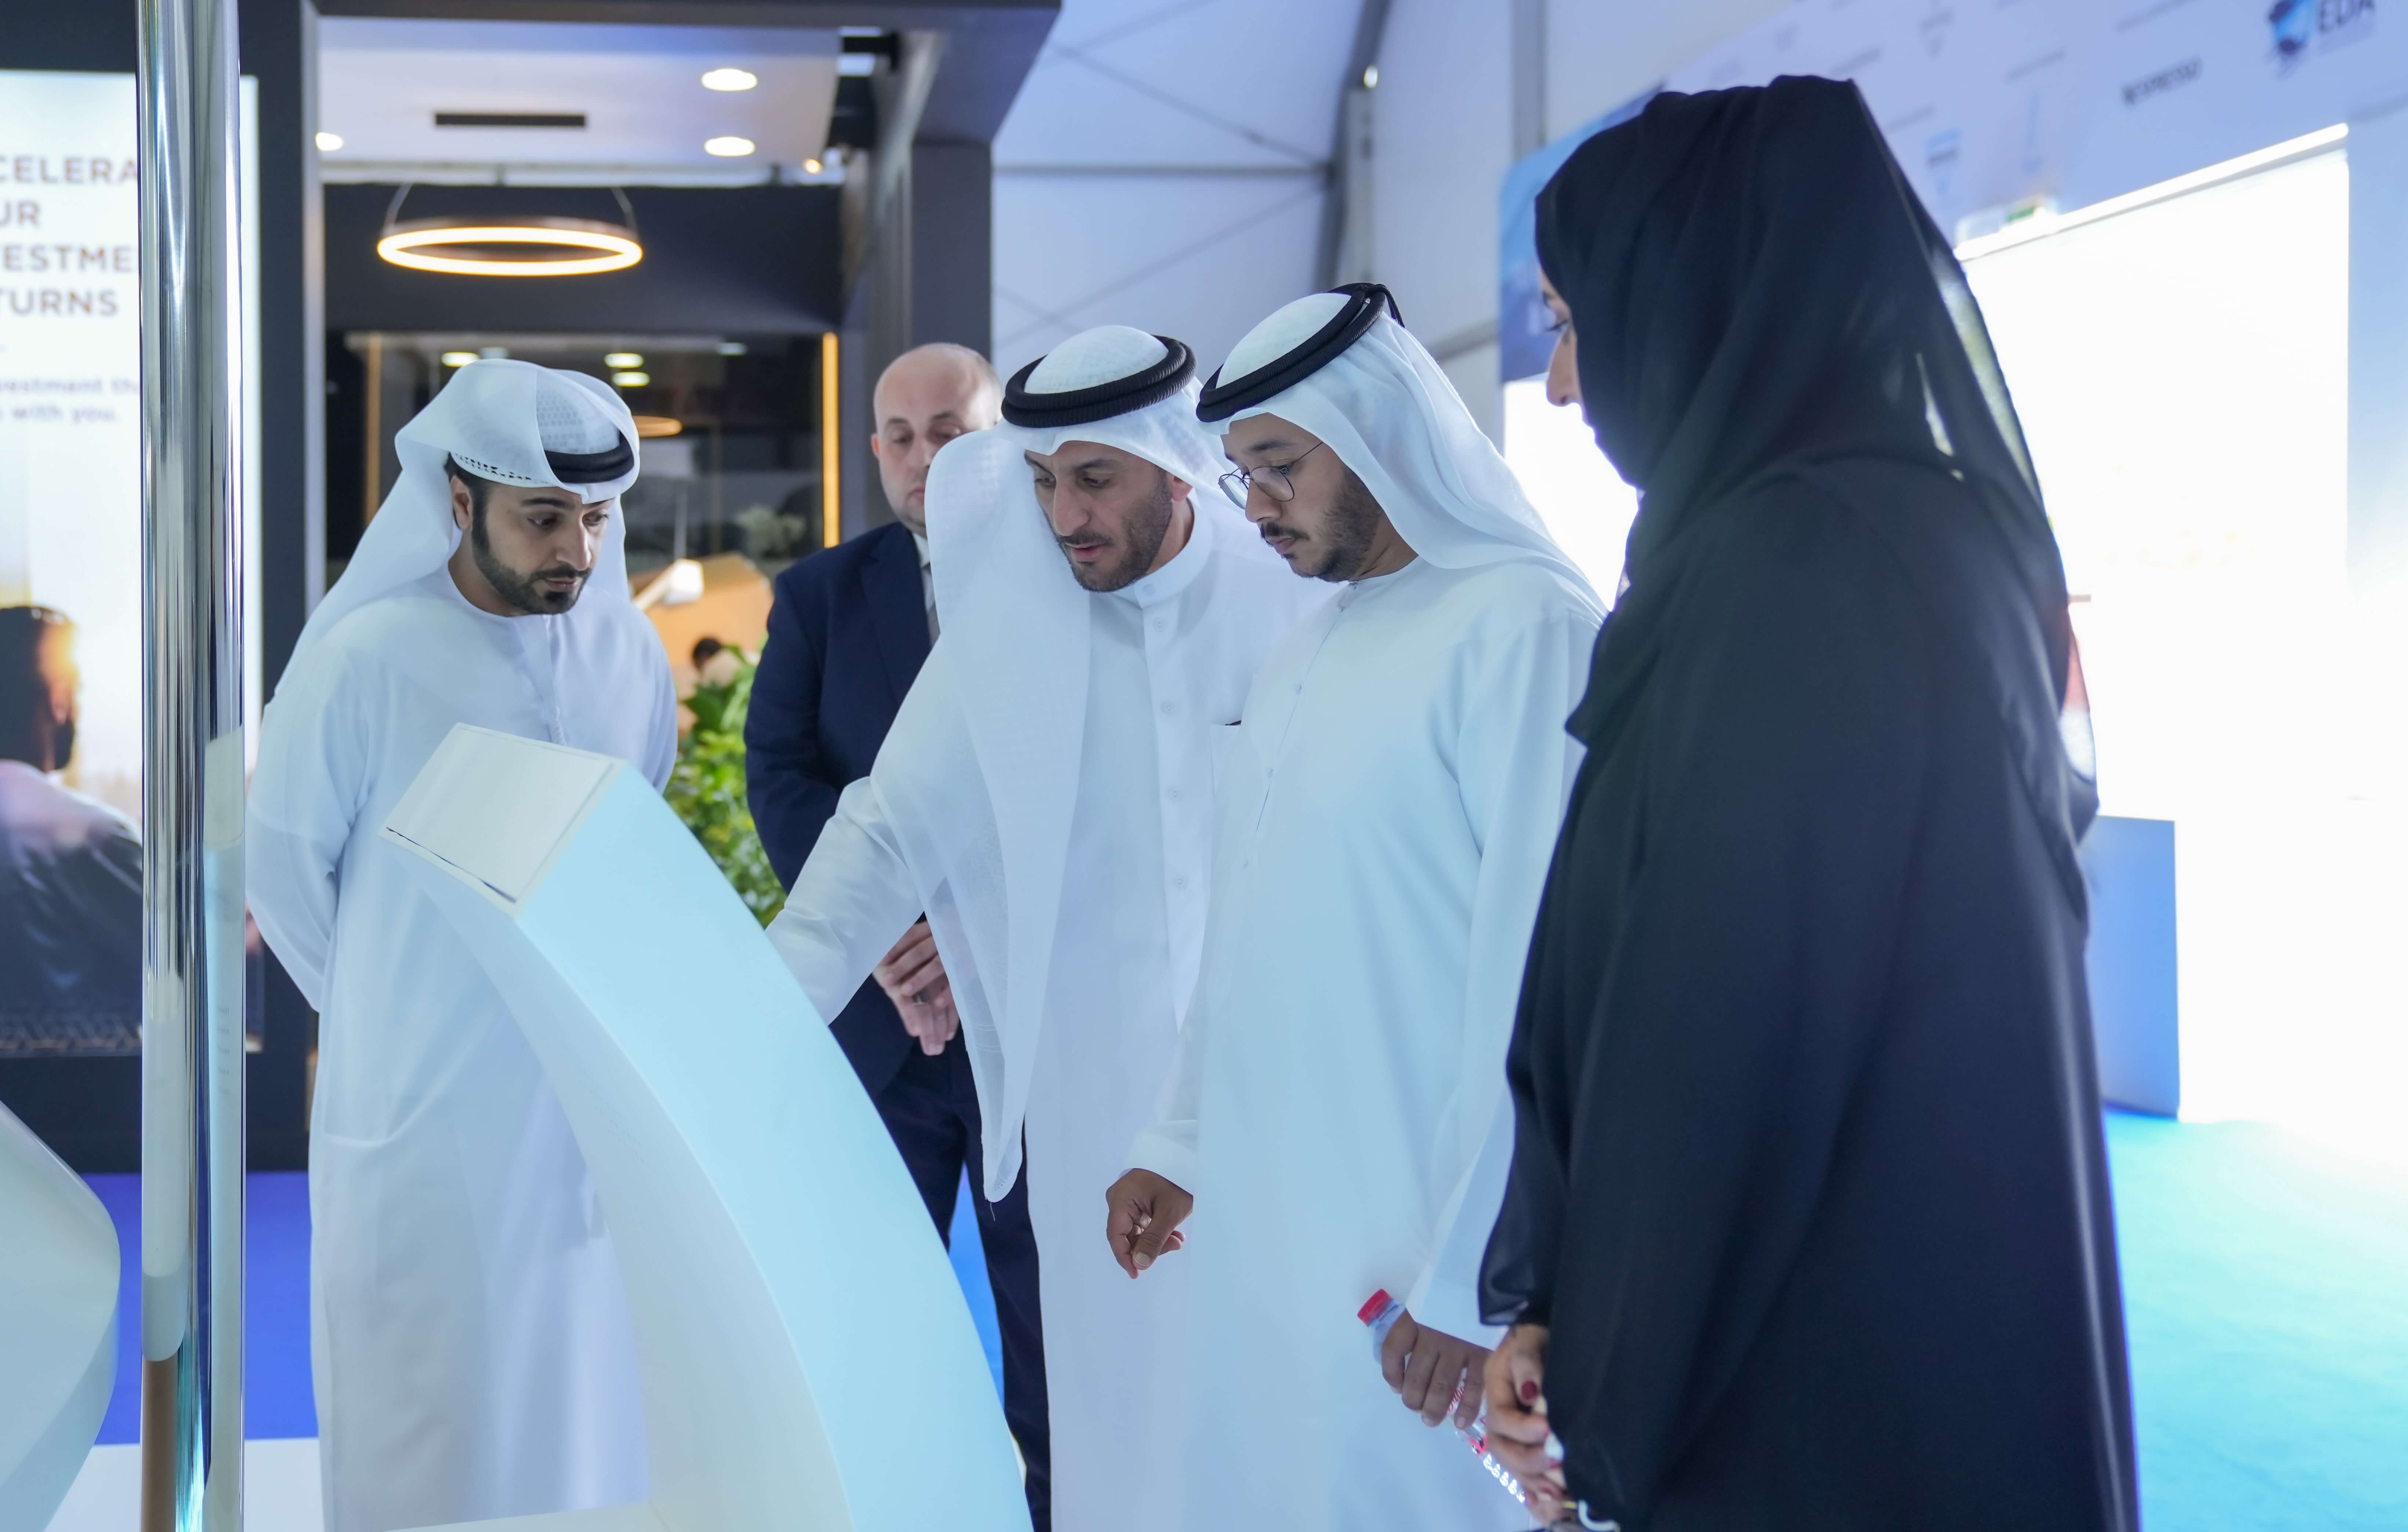 سلطة "دبي الملاحية": خطة لإطلاق مبادرات تدعم مشغلي المراسي وملاك القوارب واليخوت وشركات الخدمات البحرية